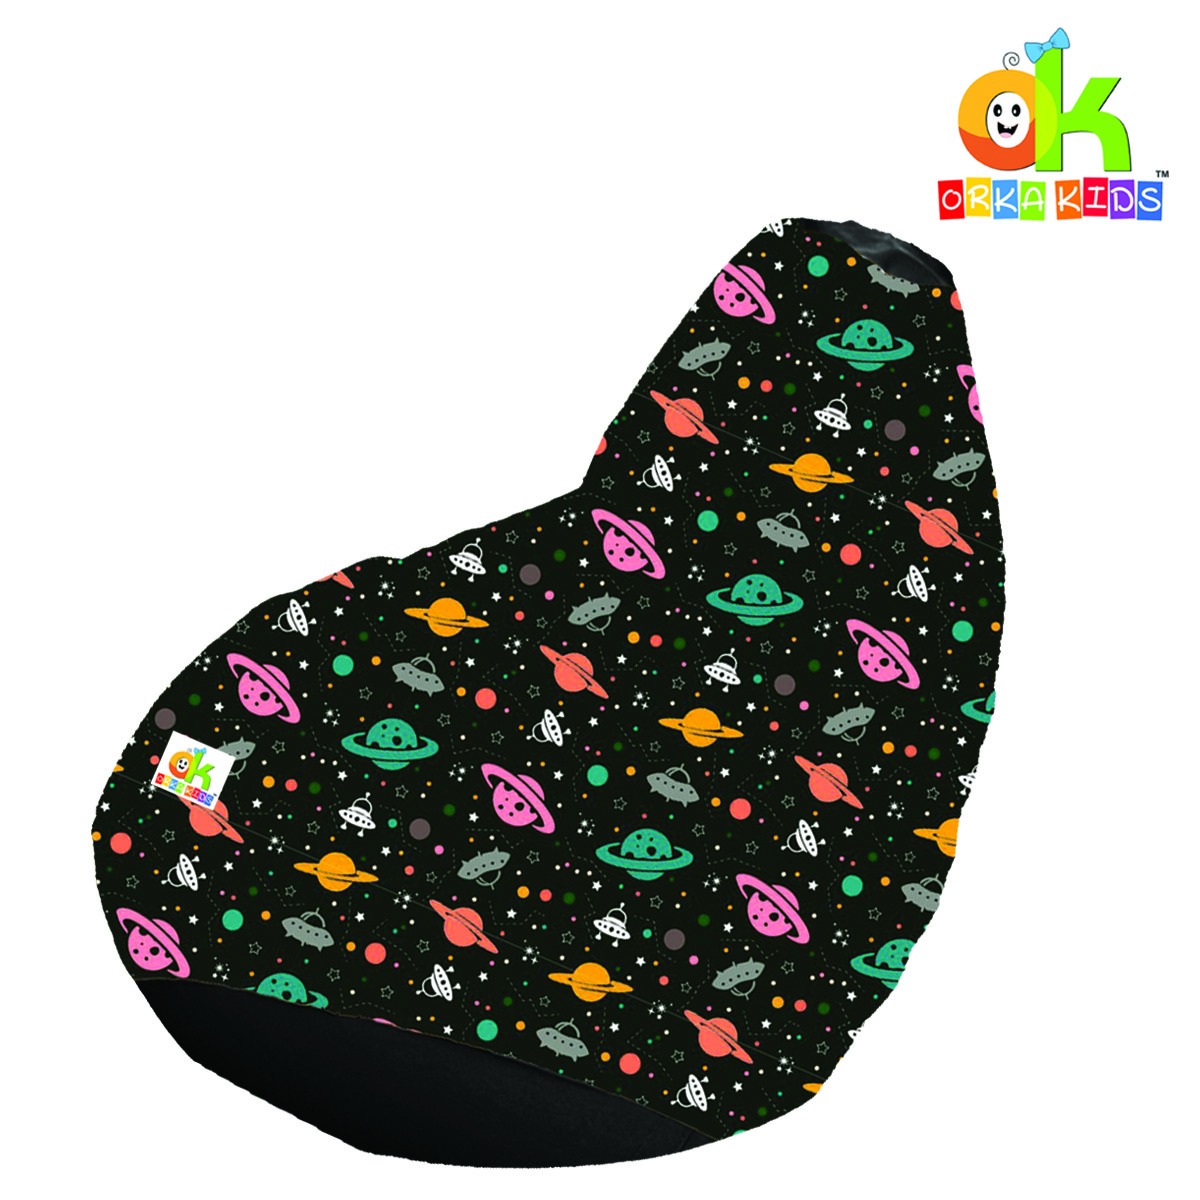 ORKA Kids Digital Printed32 Space Planet Bean Bag  